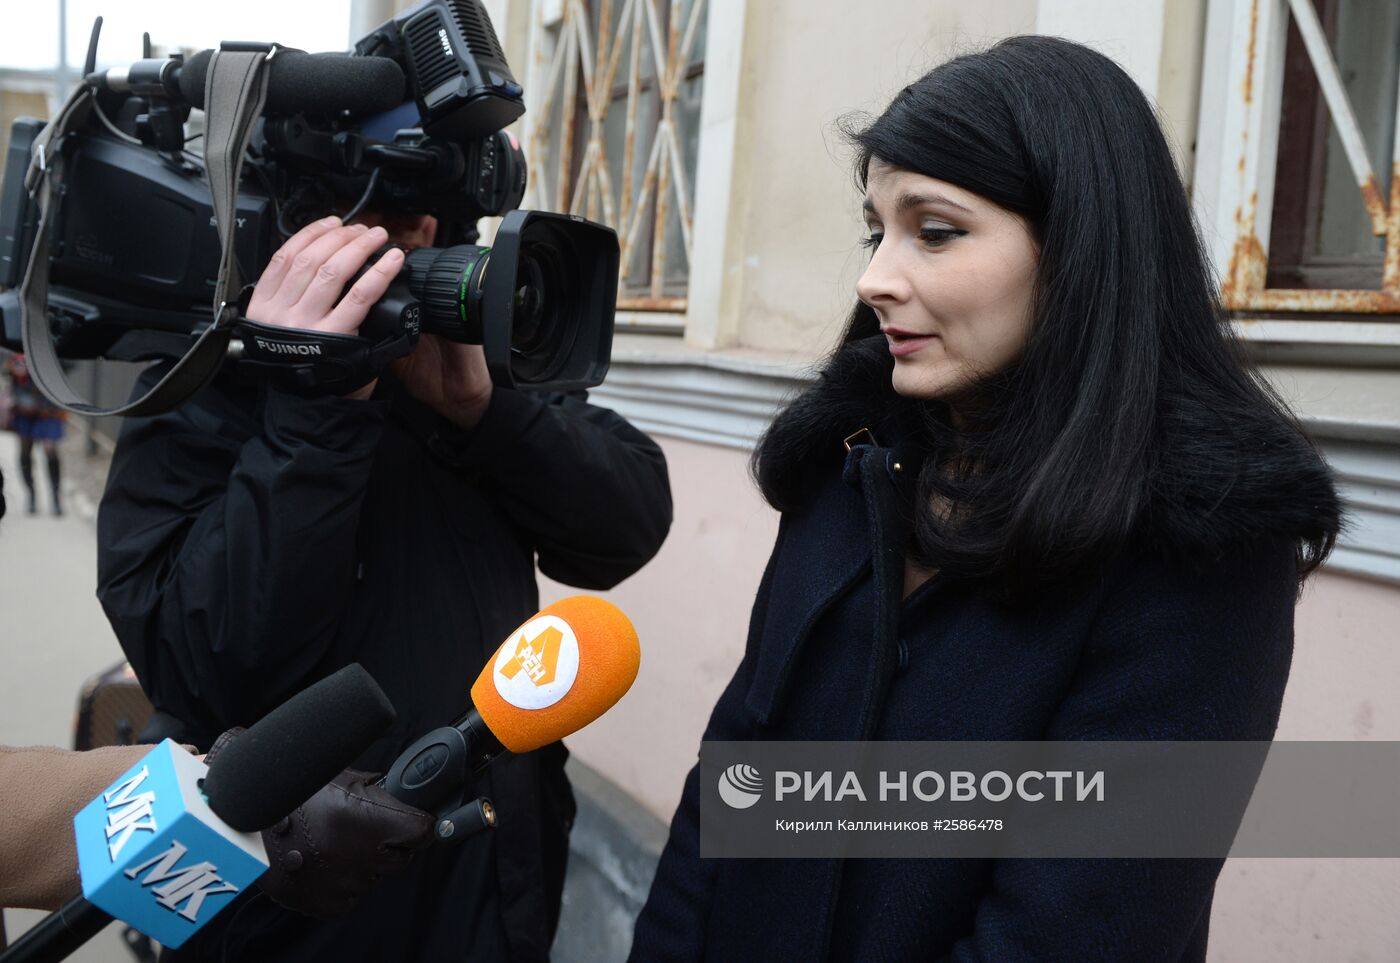 Допрос журналистки "МК" Е.Меркачевой по делу Немцова в главном следственном управлении ГСУ СКР